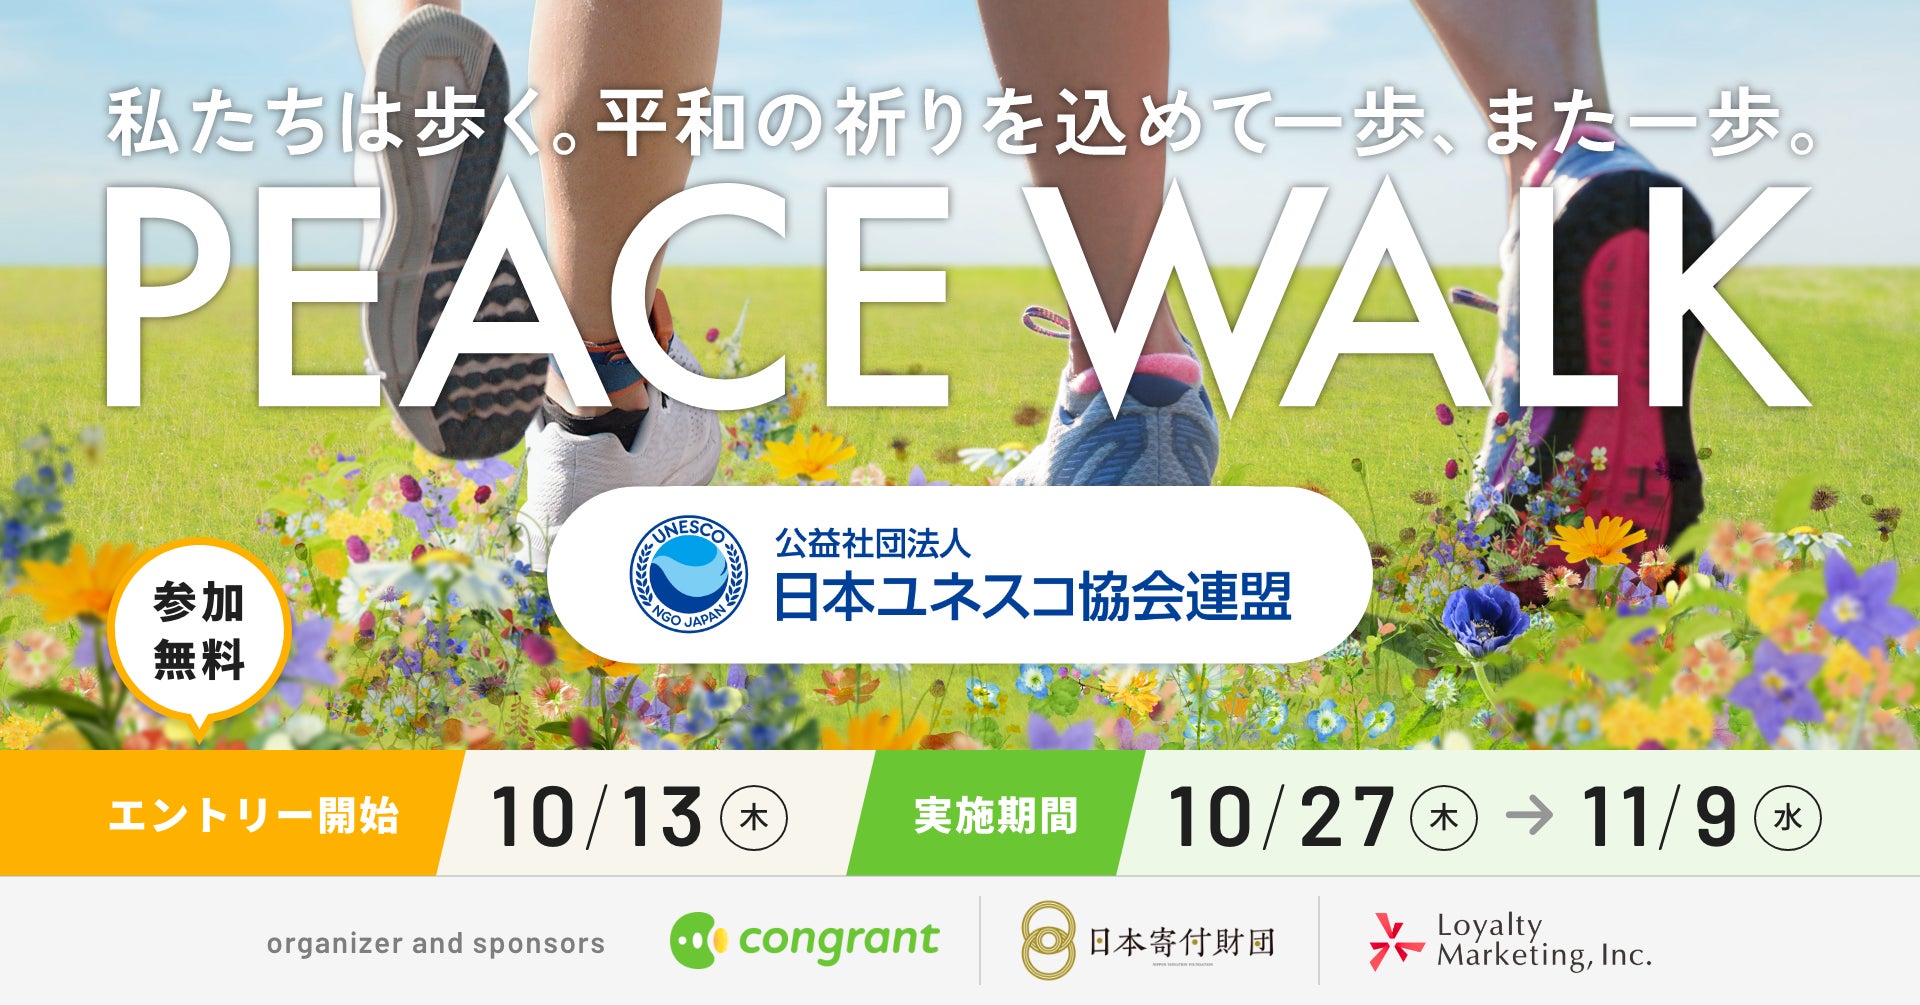 日本ユネスコ協会連盟は、歩く寄付「PEACE WALK」の寄付先団体に採択されました。のサブ画像1